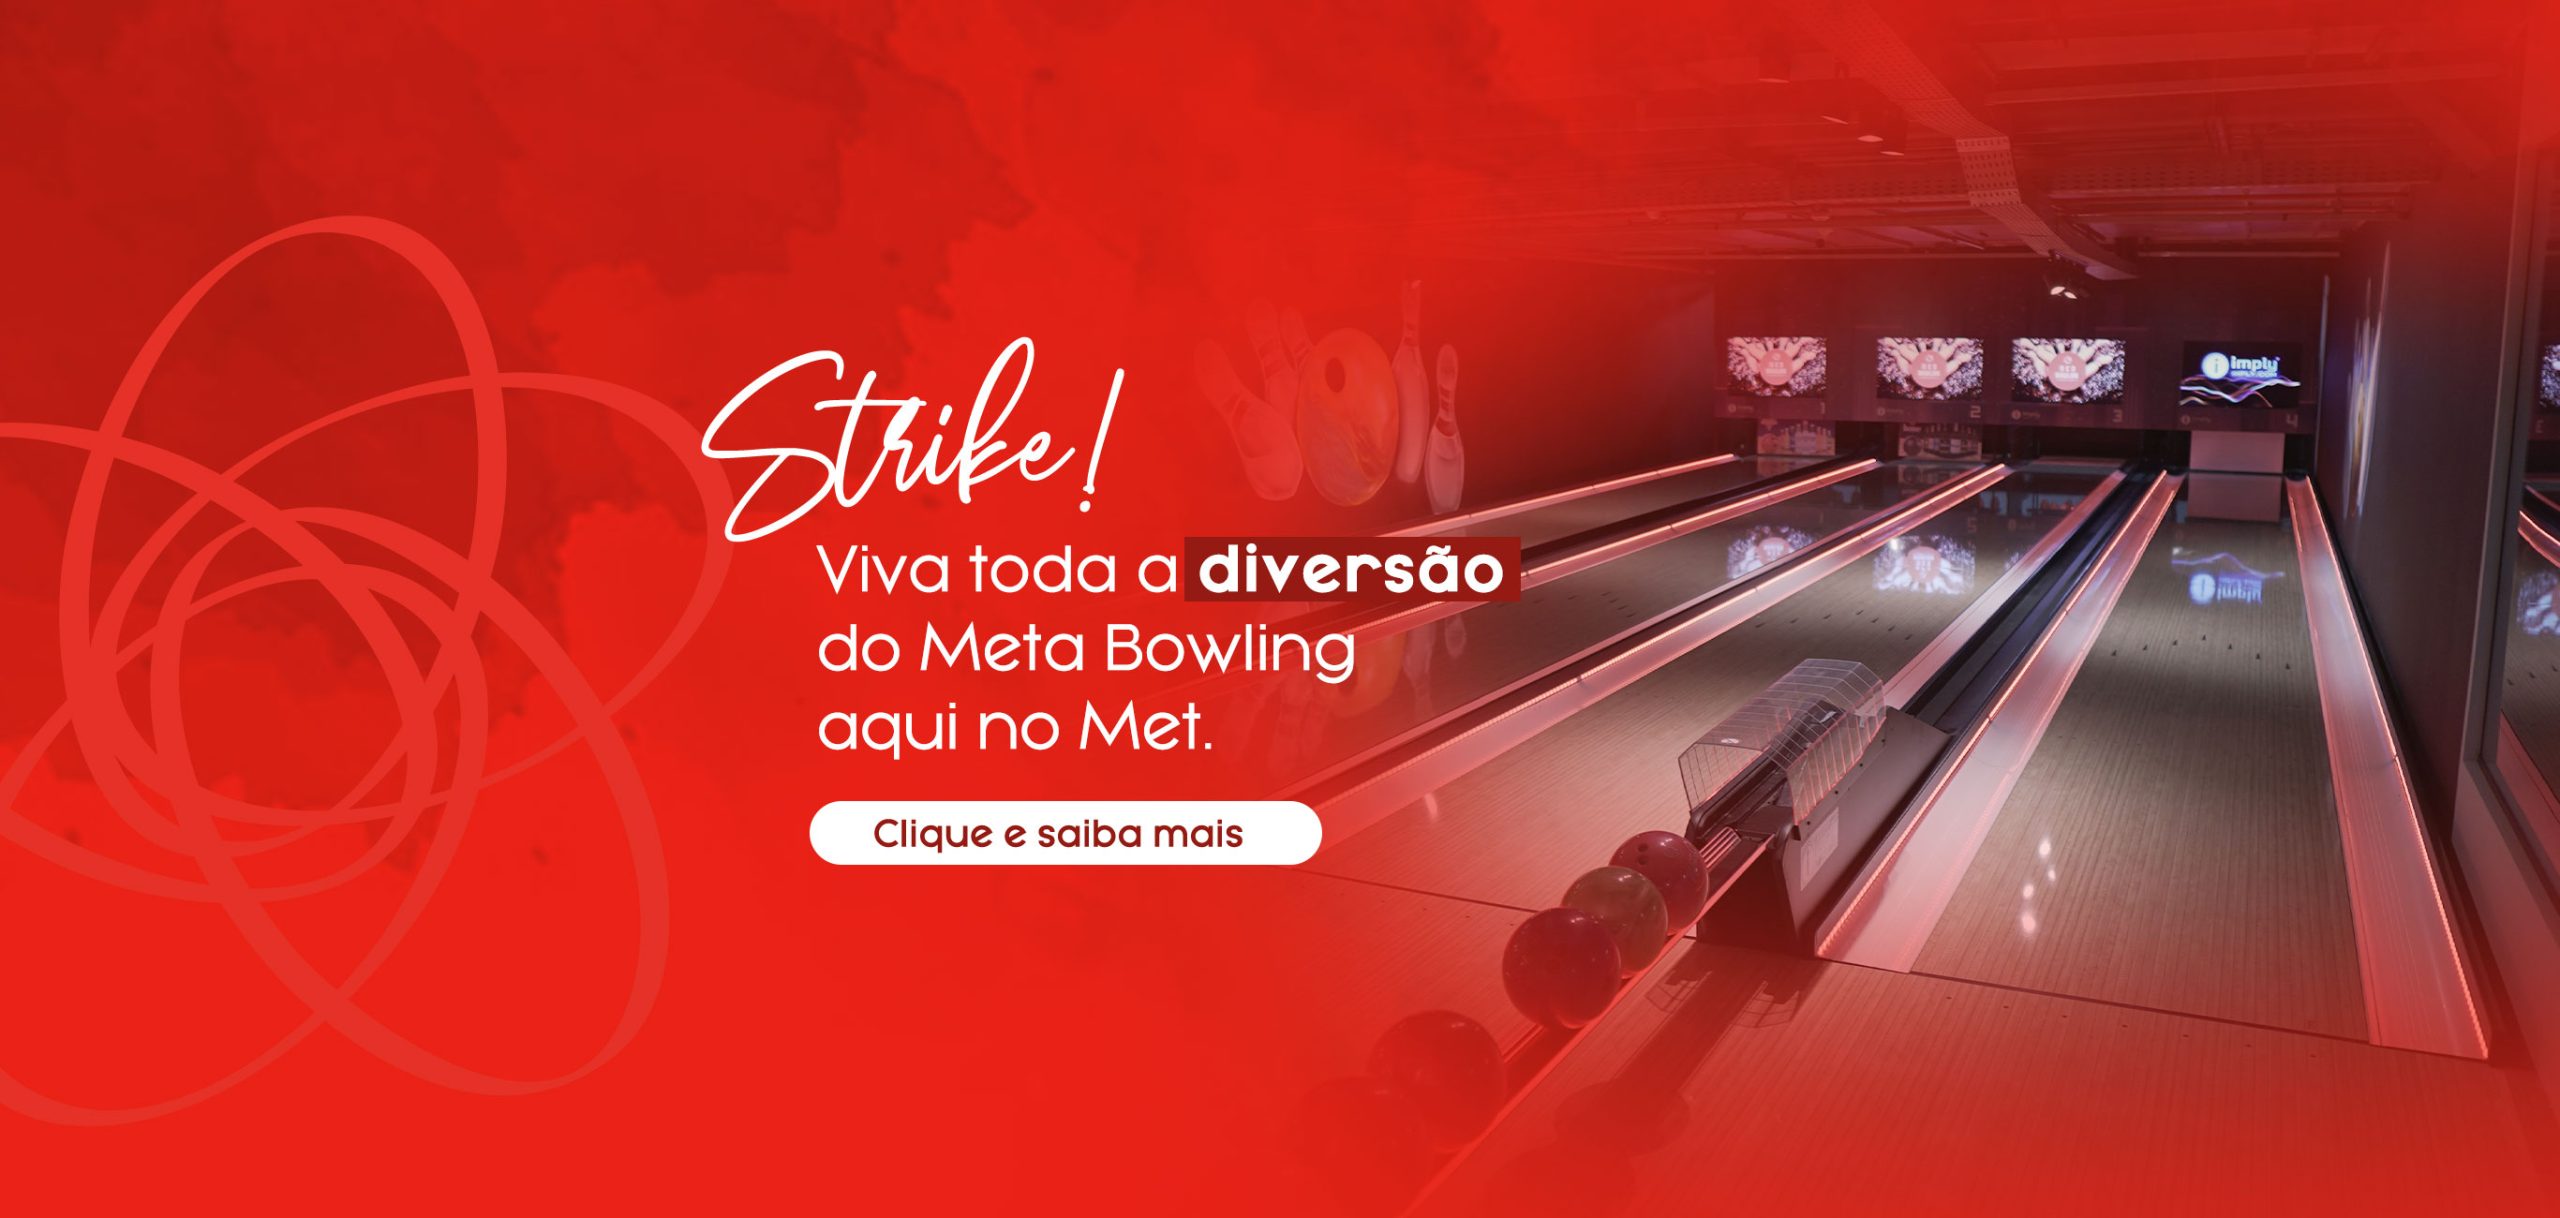 Strike! Viva toda a diversão do Meta Bowling aqui no Met. Clique e saiba mais - Shopping Metropolitano Barra